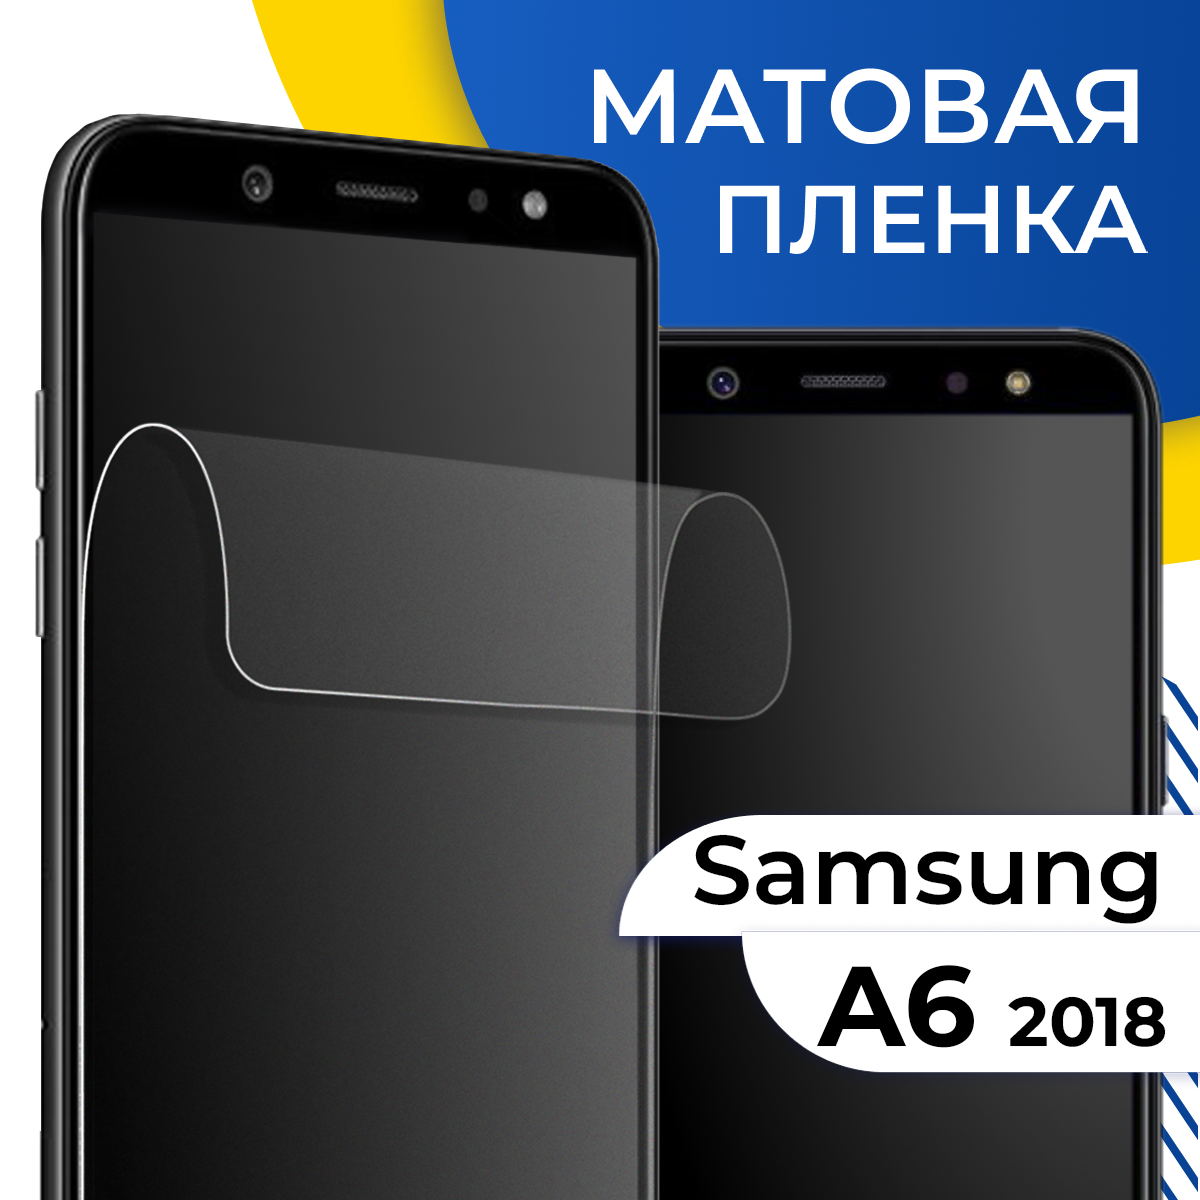 Матовая гидрогелевая пленка для телефона Samsung Galaxy A6 2018 / Самовосстанавливающаяся защитная пленка на смартфон Самсунг Галакси А6 2018